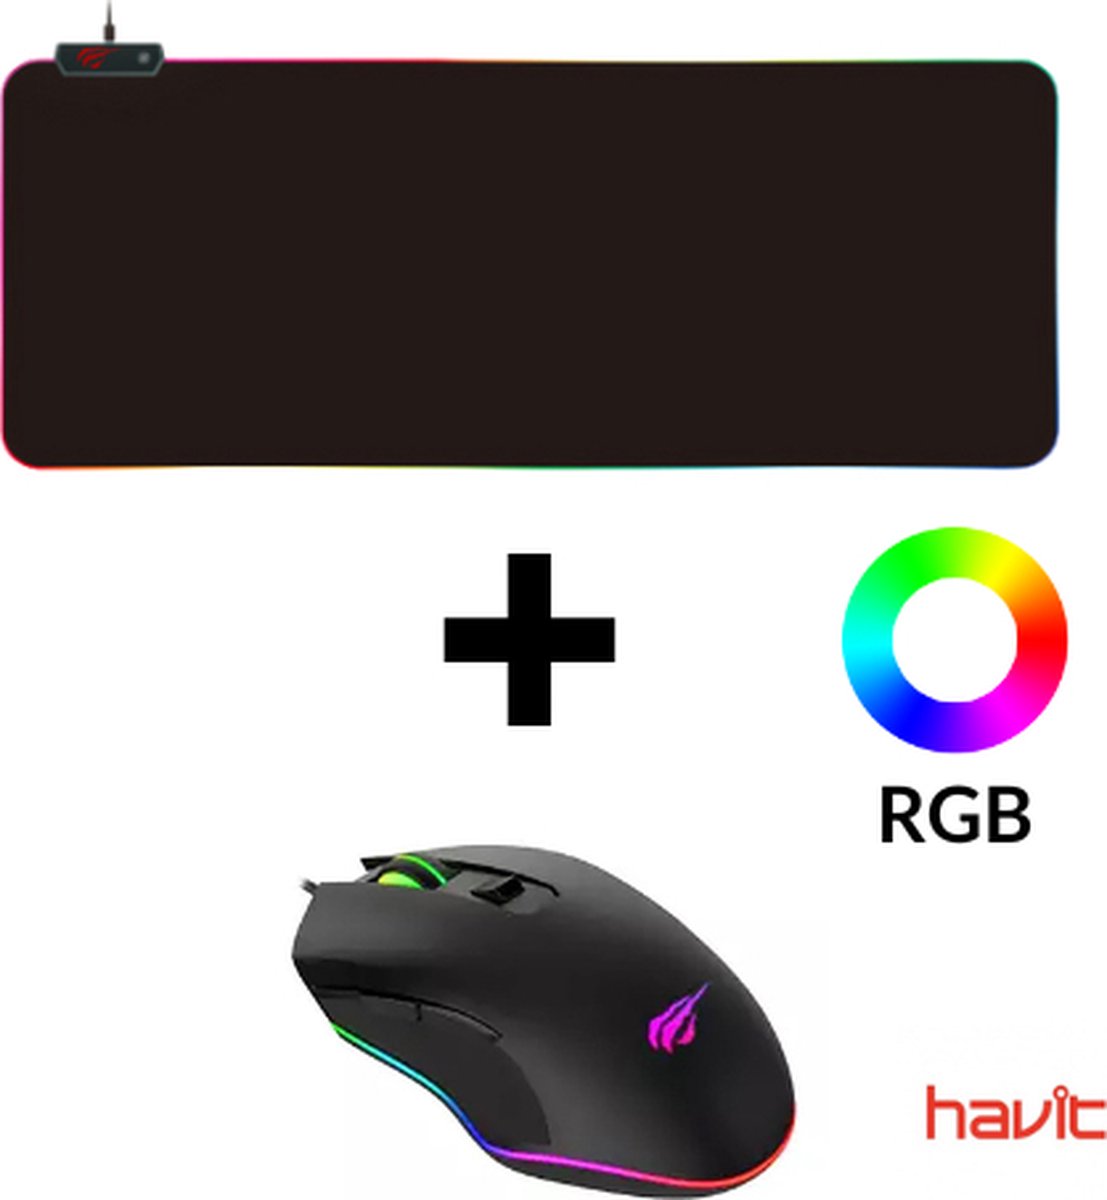 Havit Gamenote RGB gaming muis + XXL RGB muismat HV-MP903A